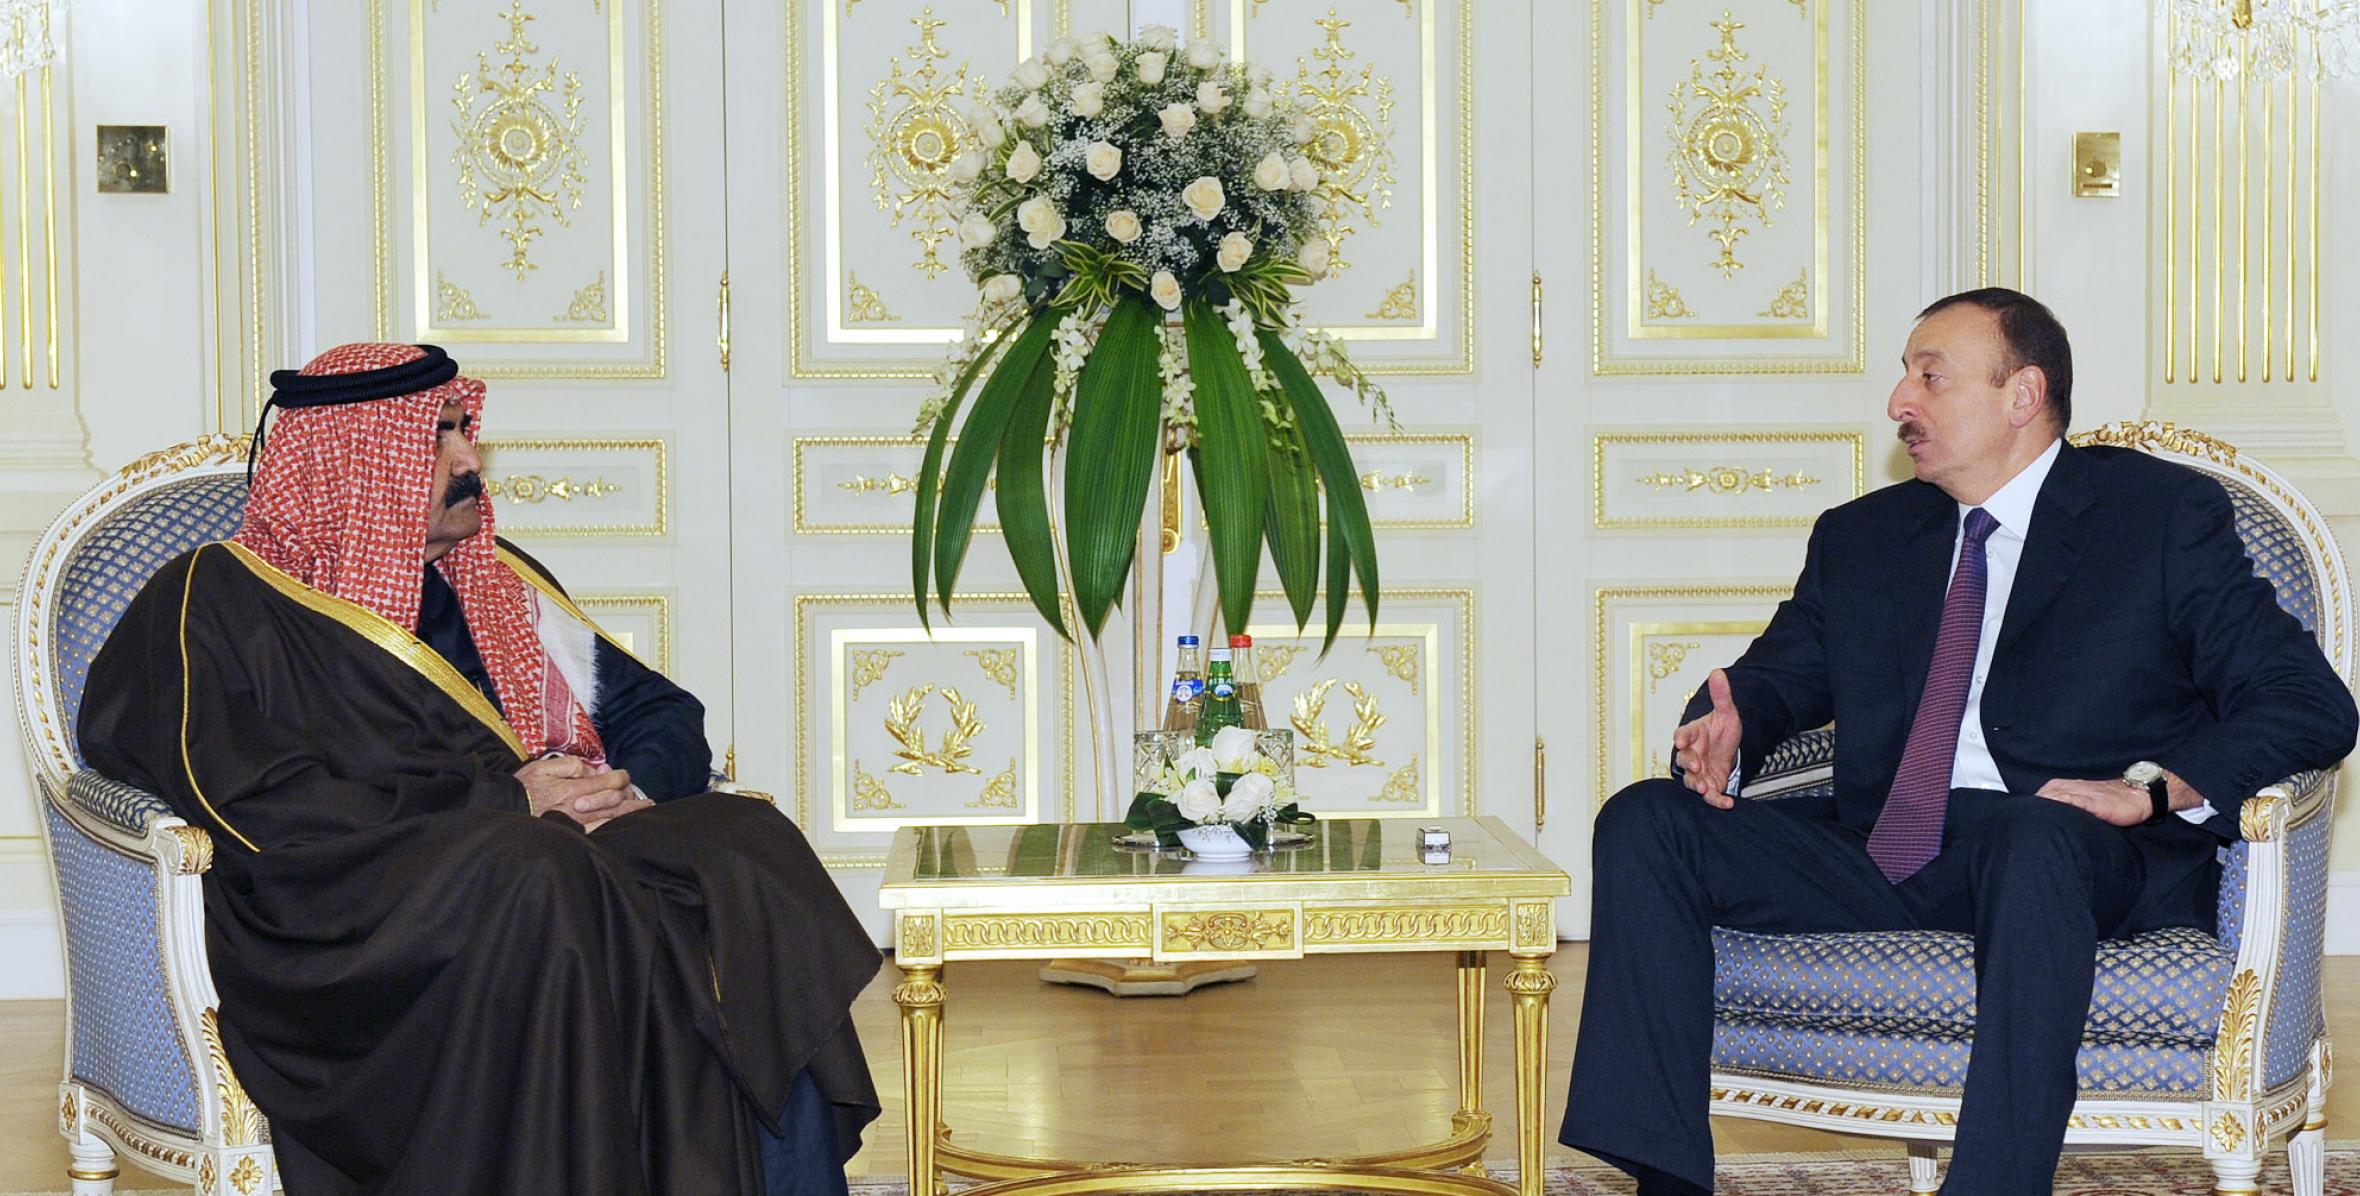 Ilham Aliyev met with the Emir of Qatar, Sheikh Hamad bin Khalifa Al Thani